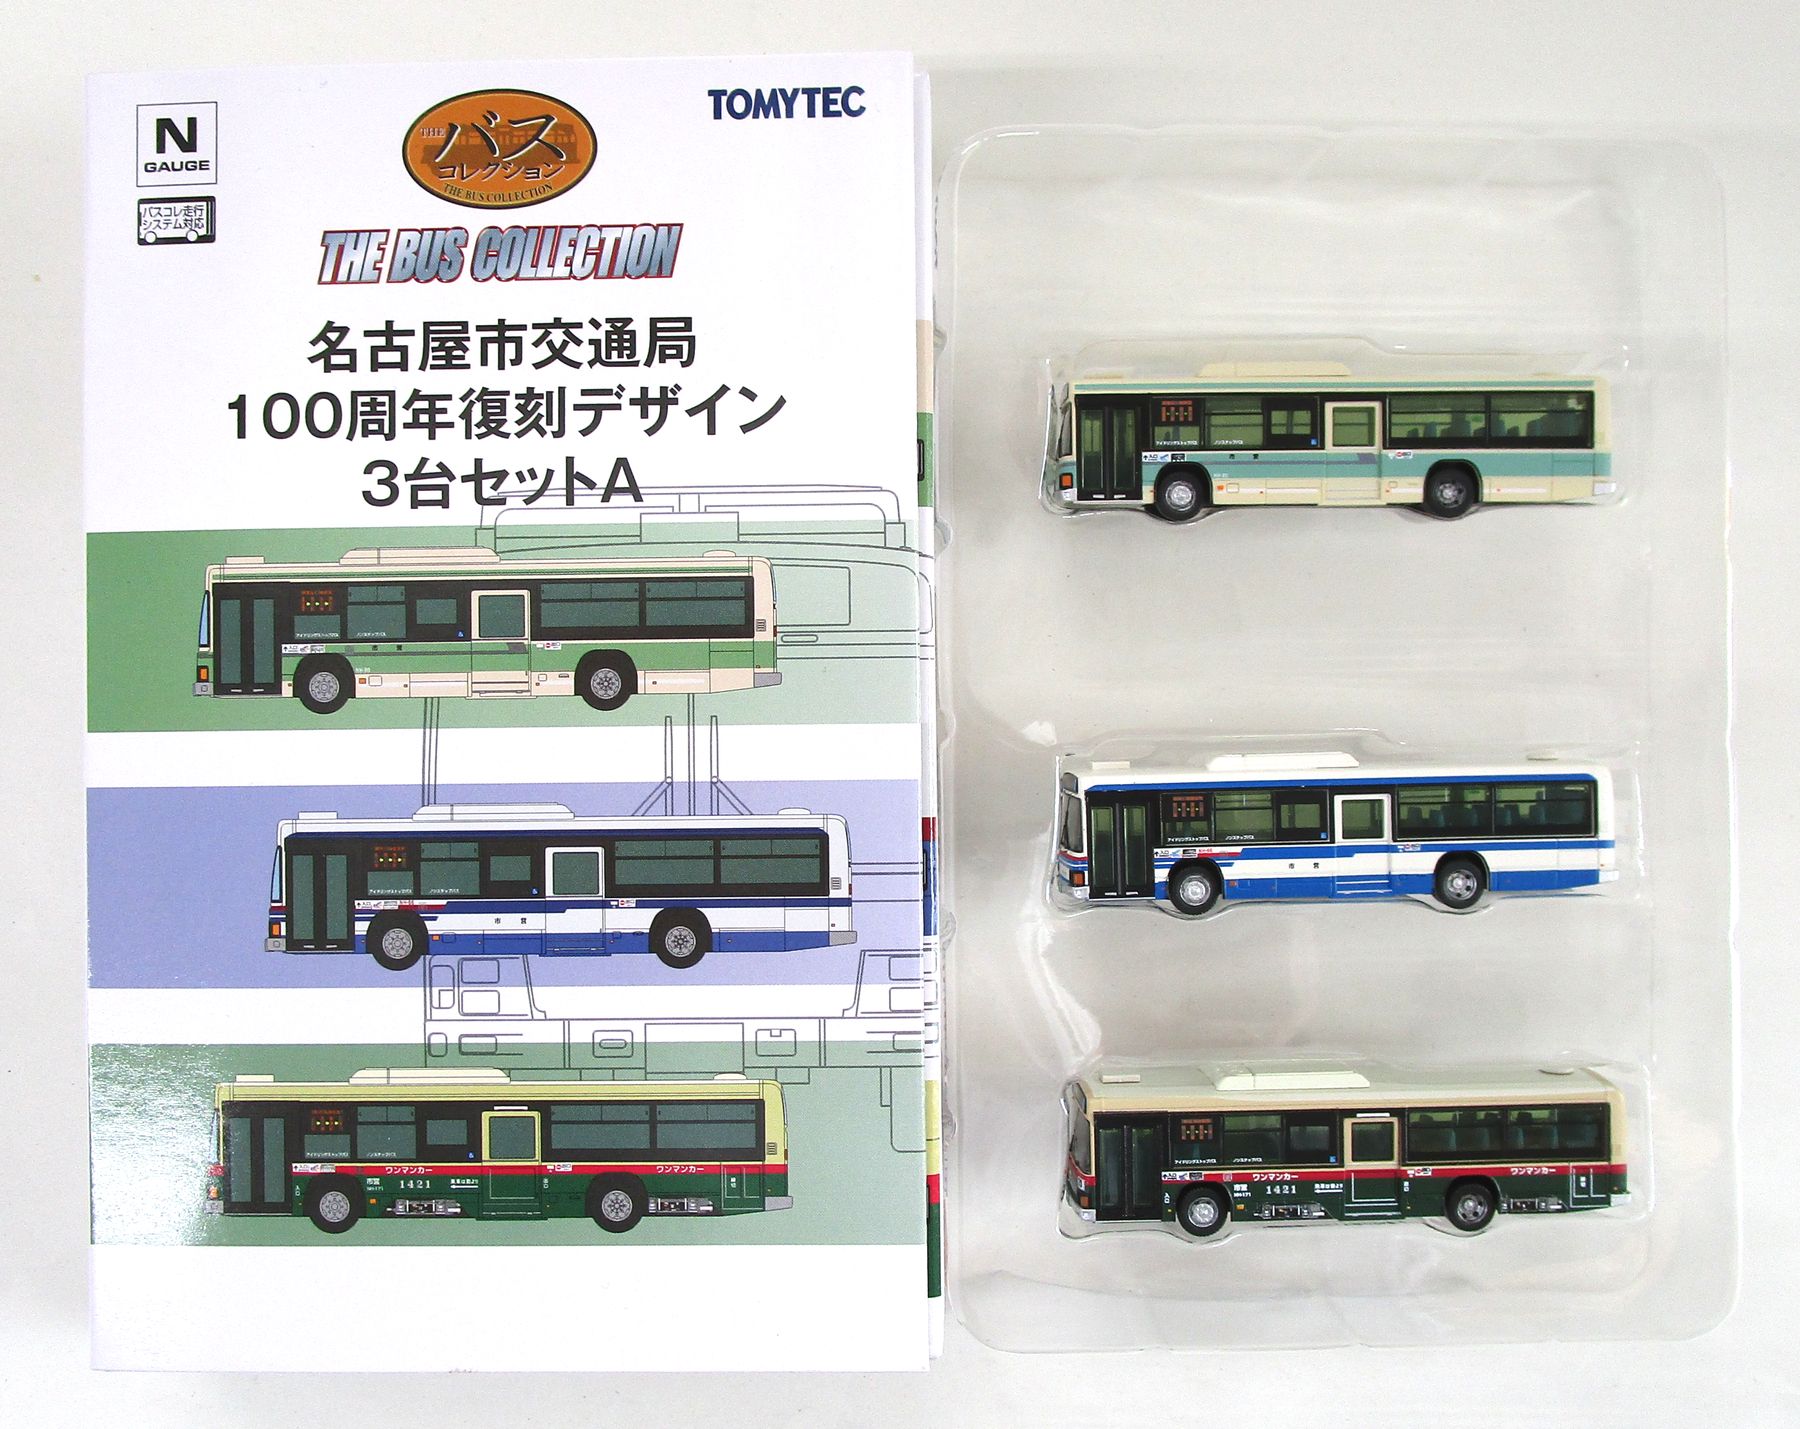 トミーテック  ザ・バスコレクション  名古屋市交通局オリジナルバスセット